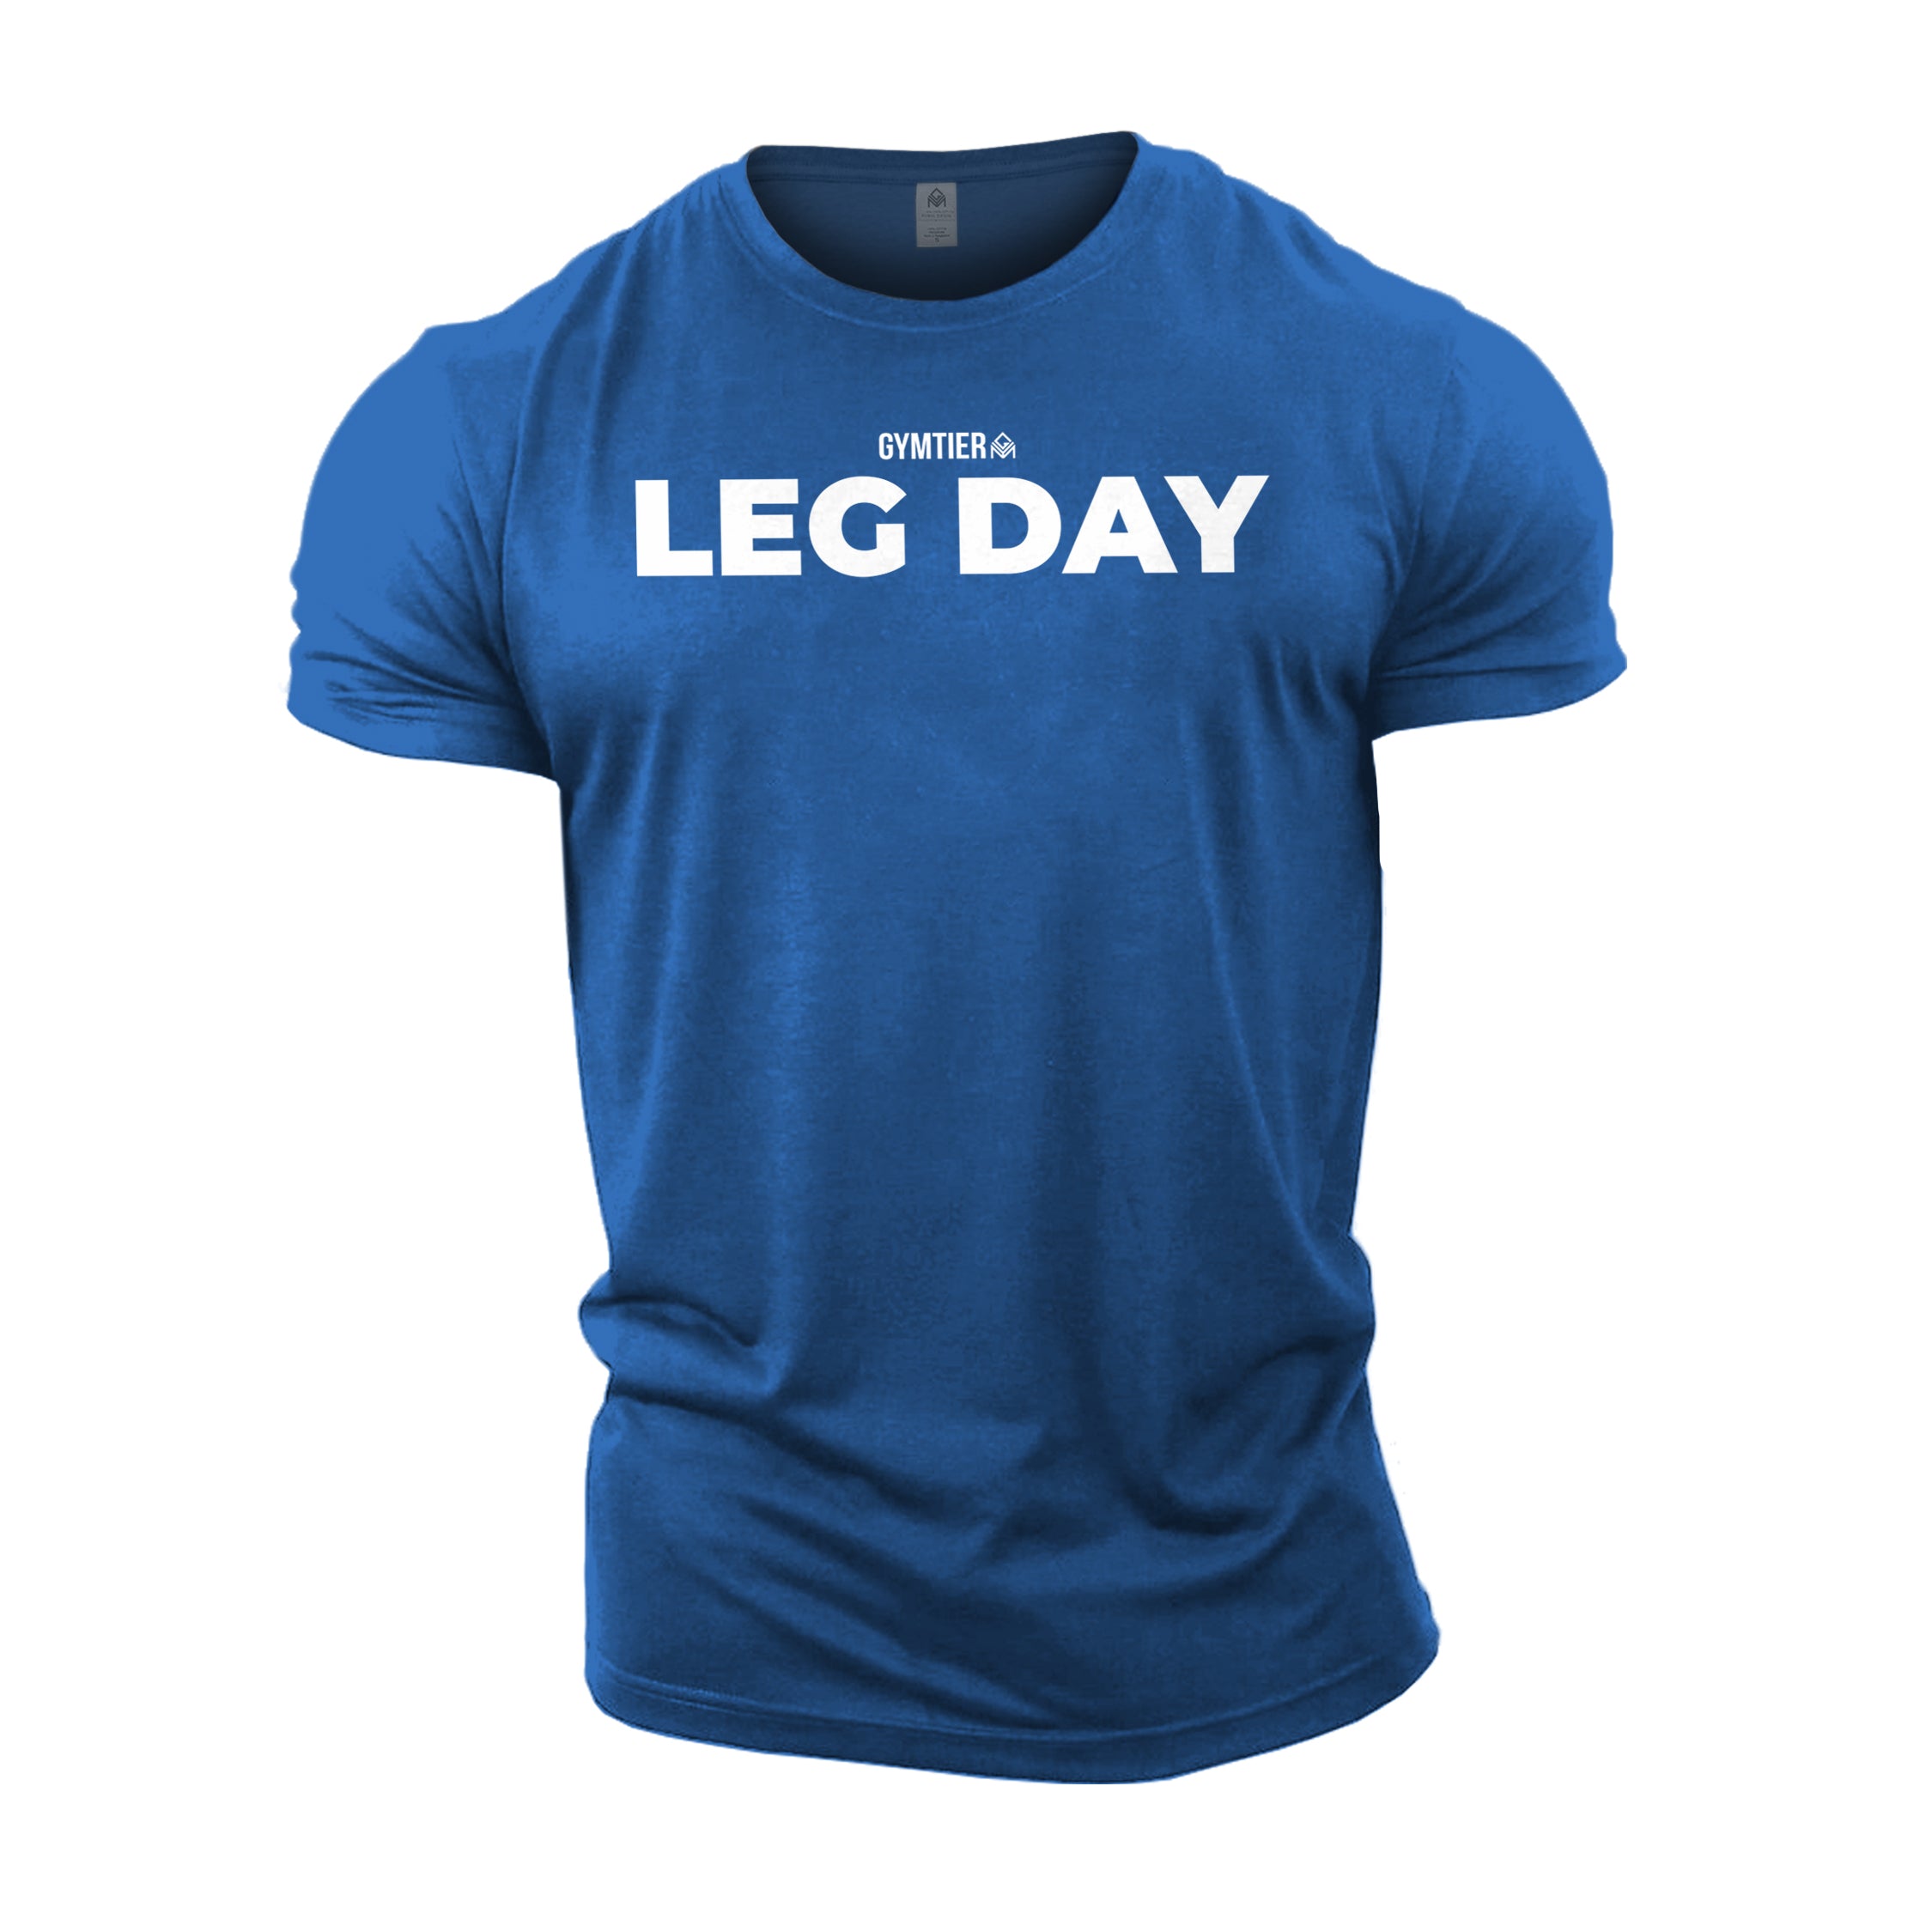 GYMTIER Leg Day T-Shirt